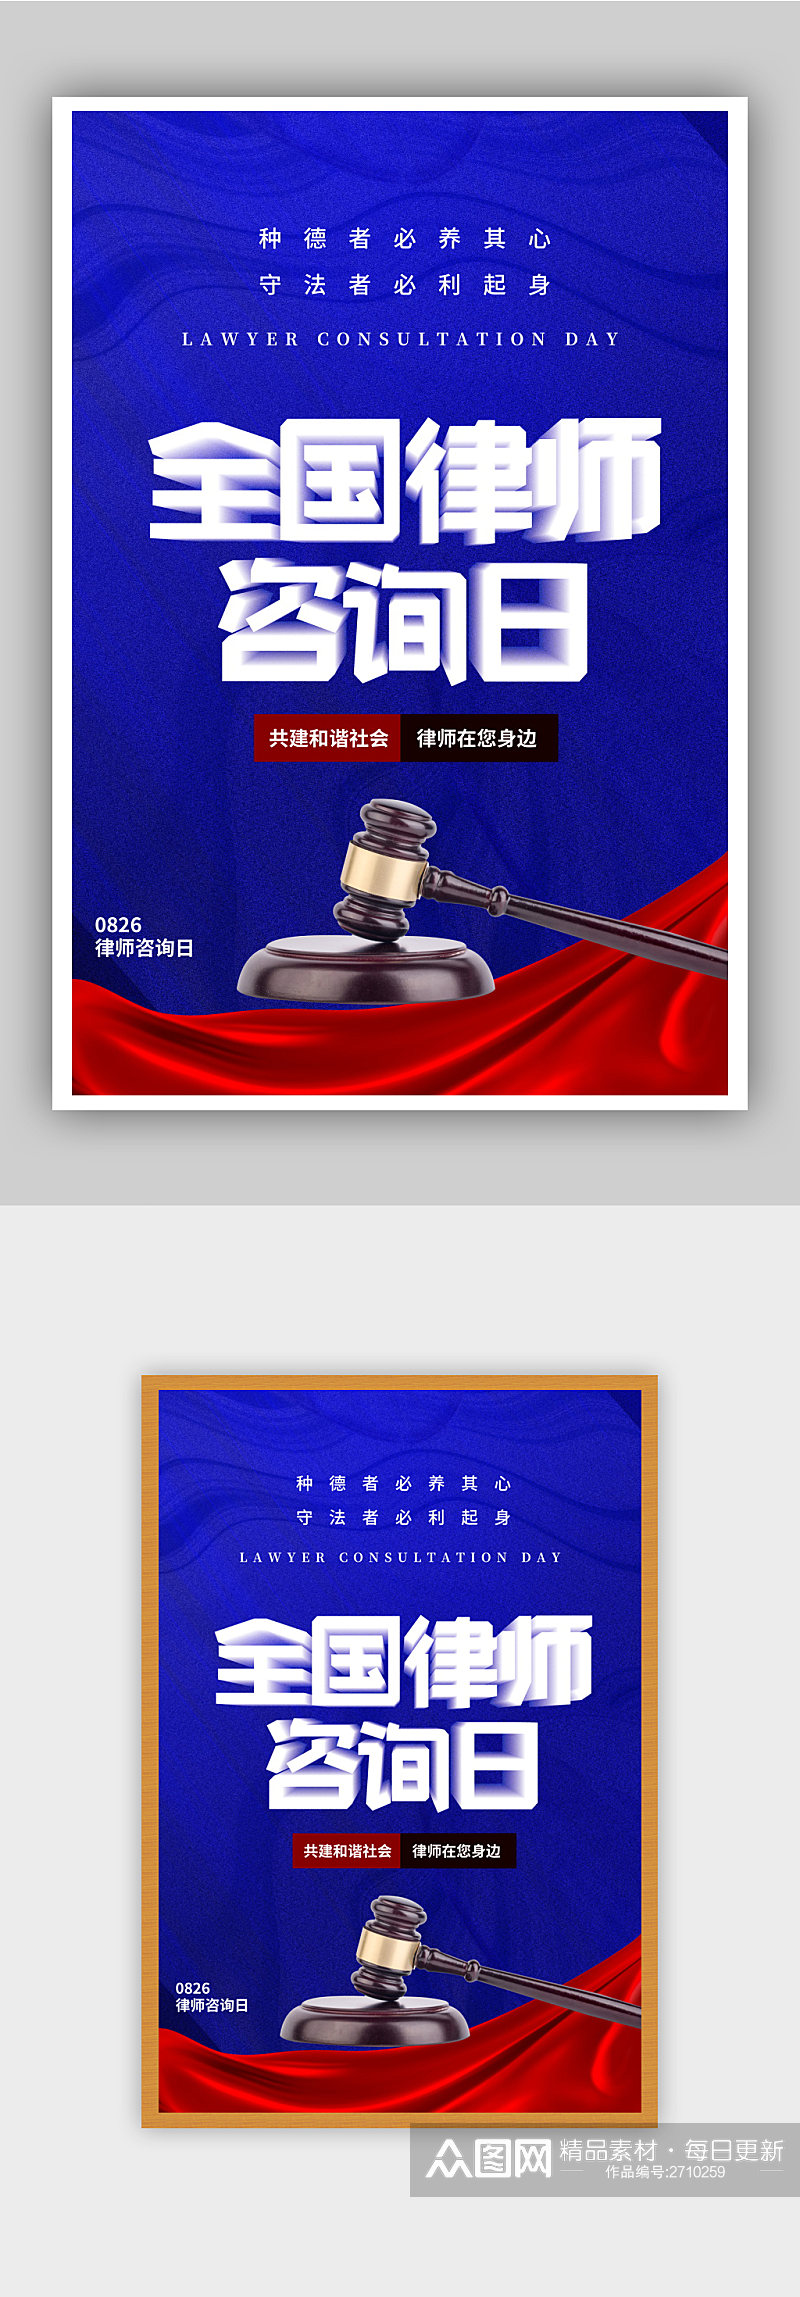 红蓝全国律师咨询日节日海报素材